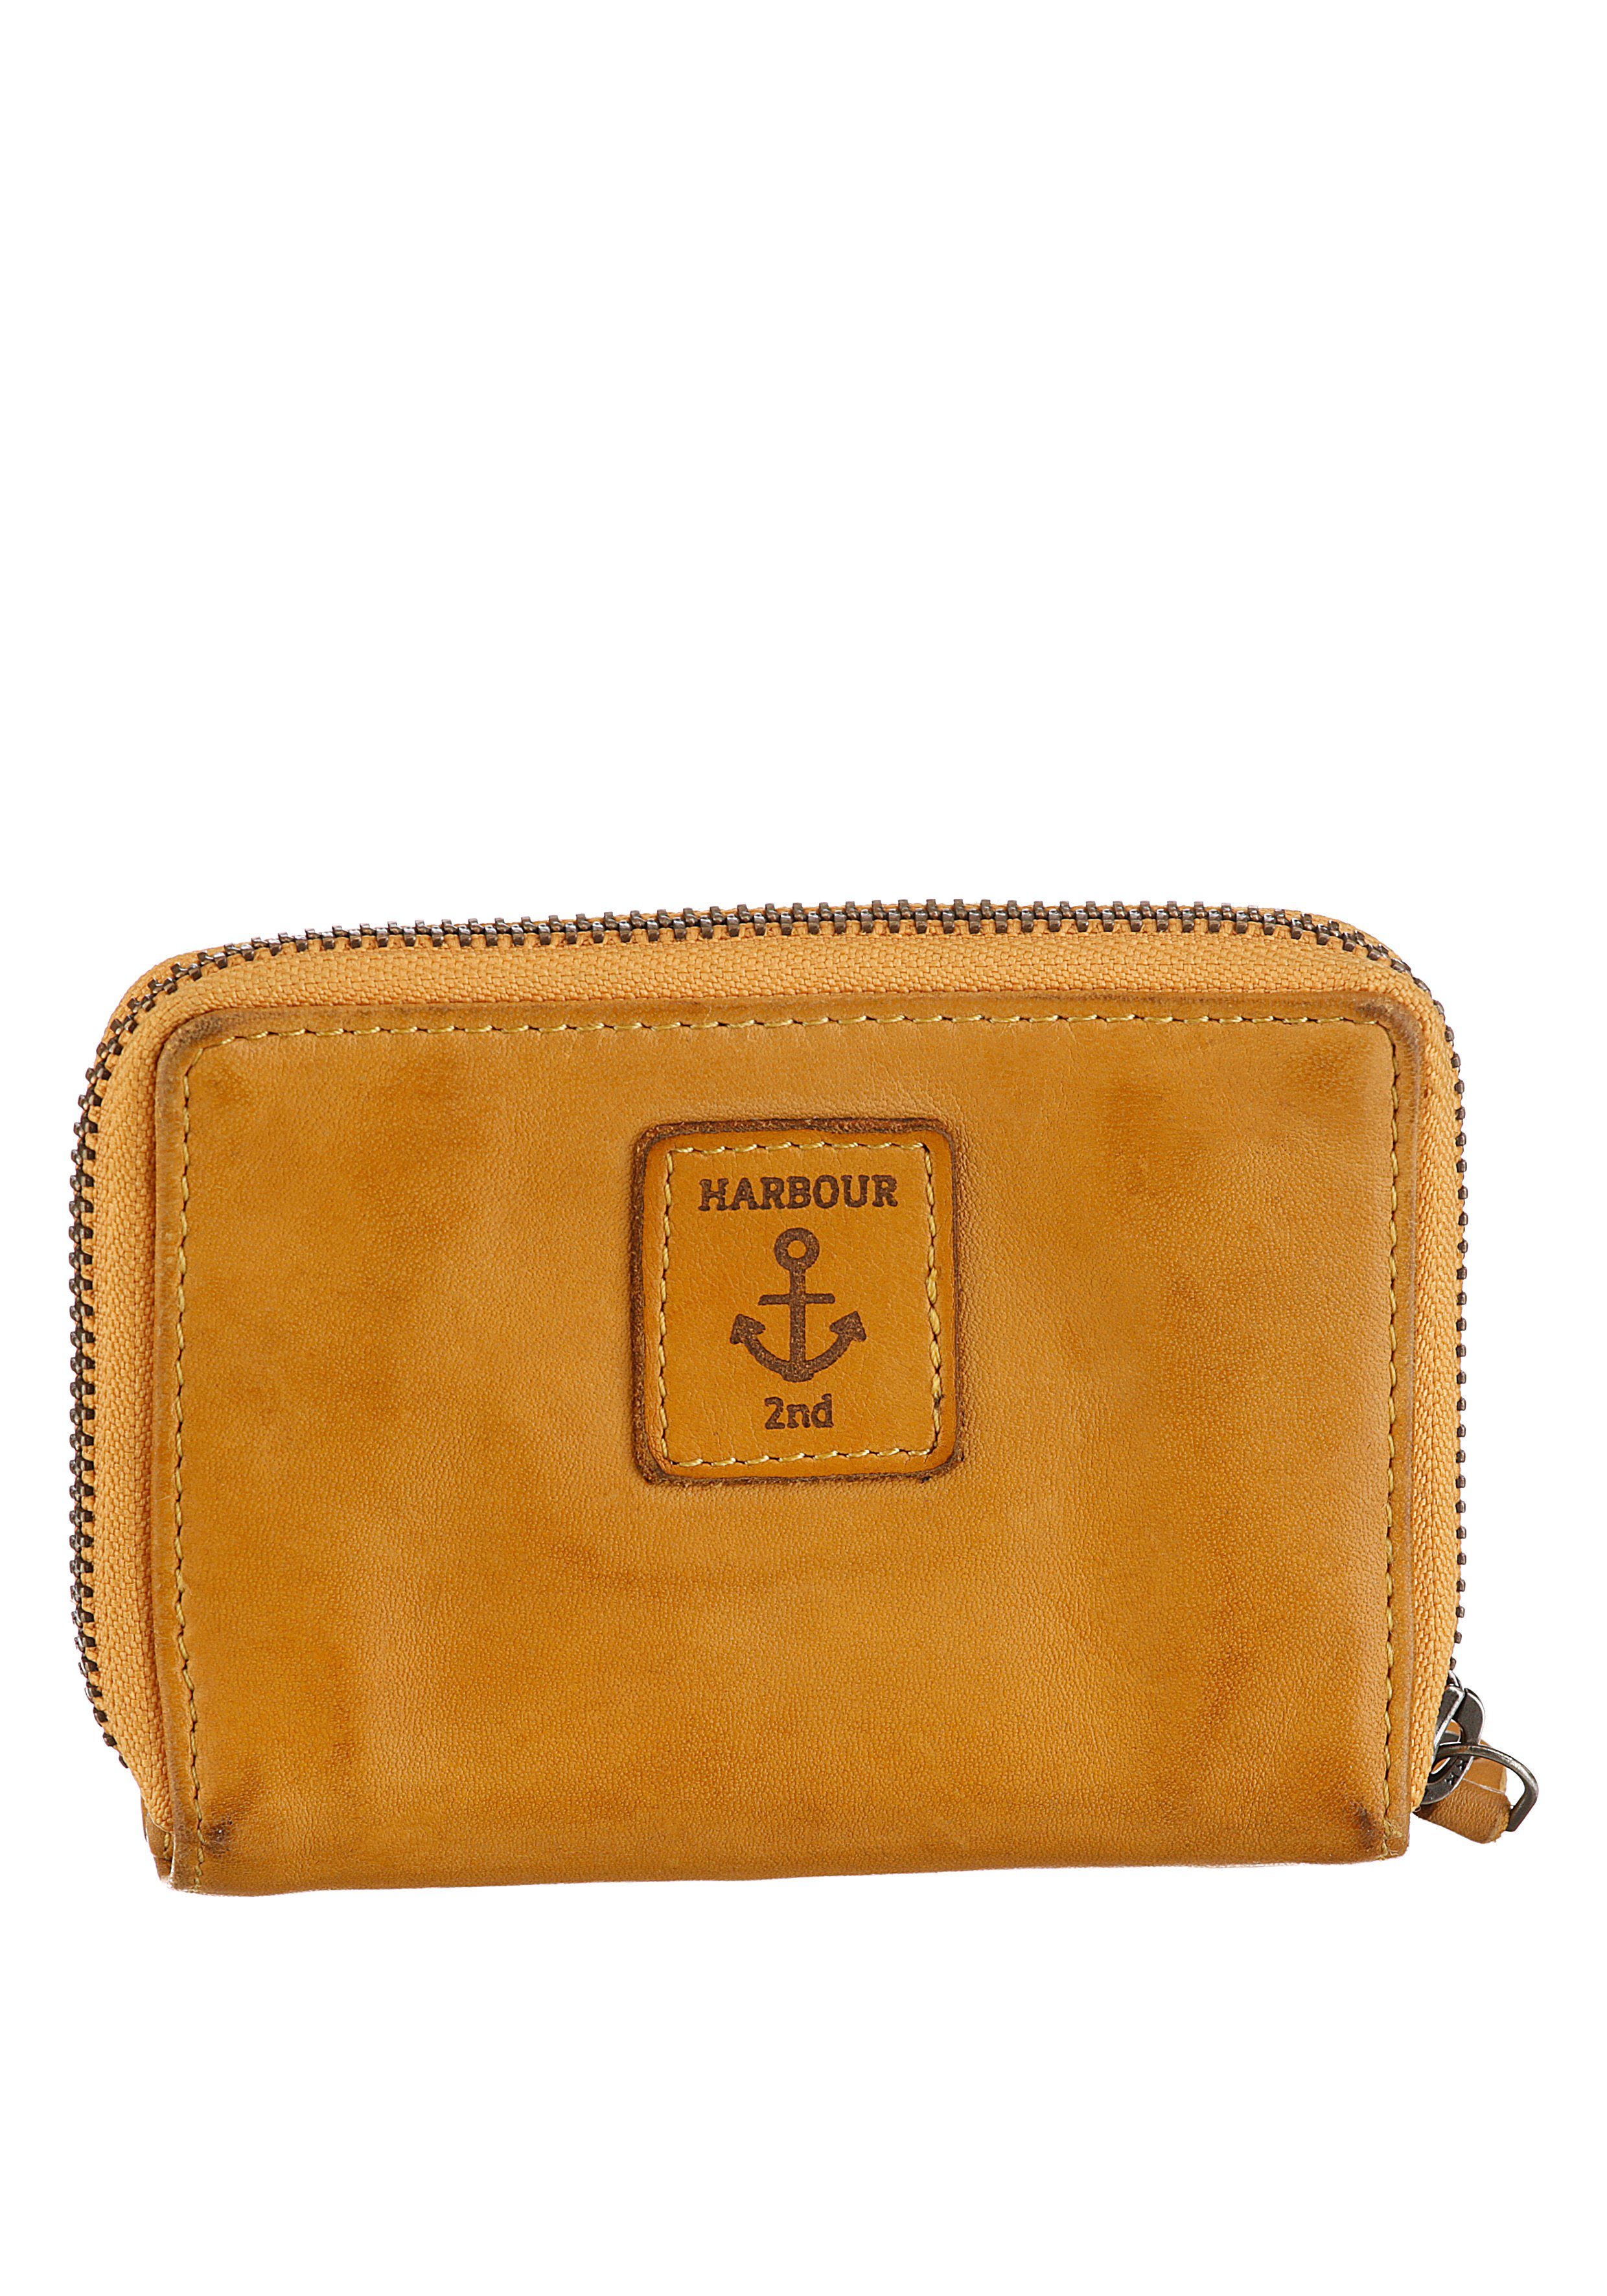 mit 2nd RFID-Technologie Is, Harbour Second Geldbörse mustard HARBOUR Wallet